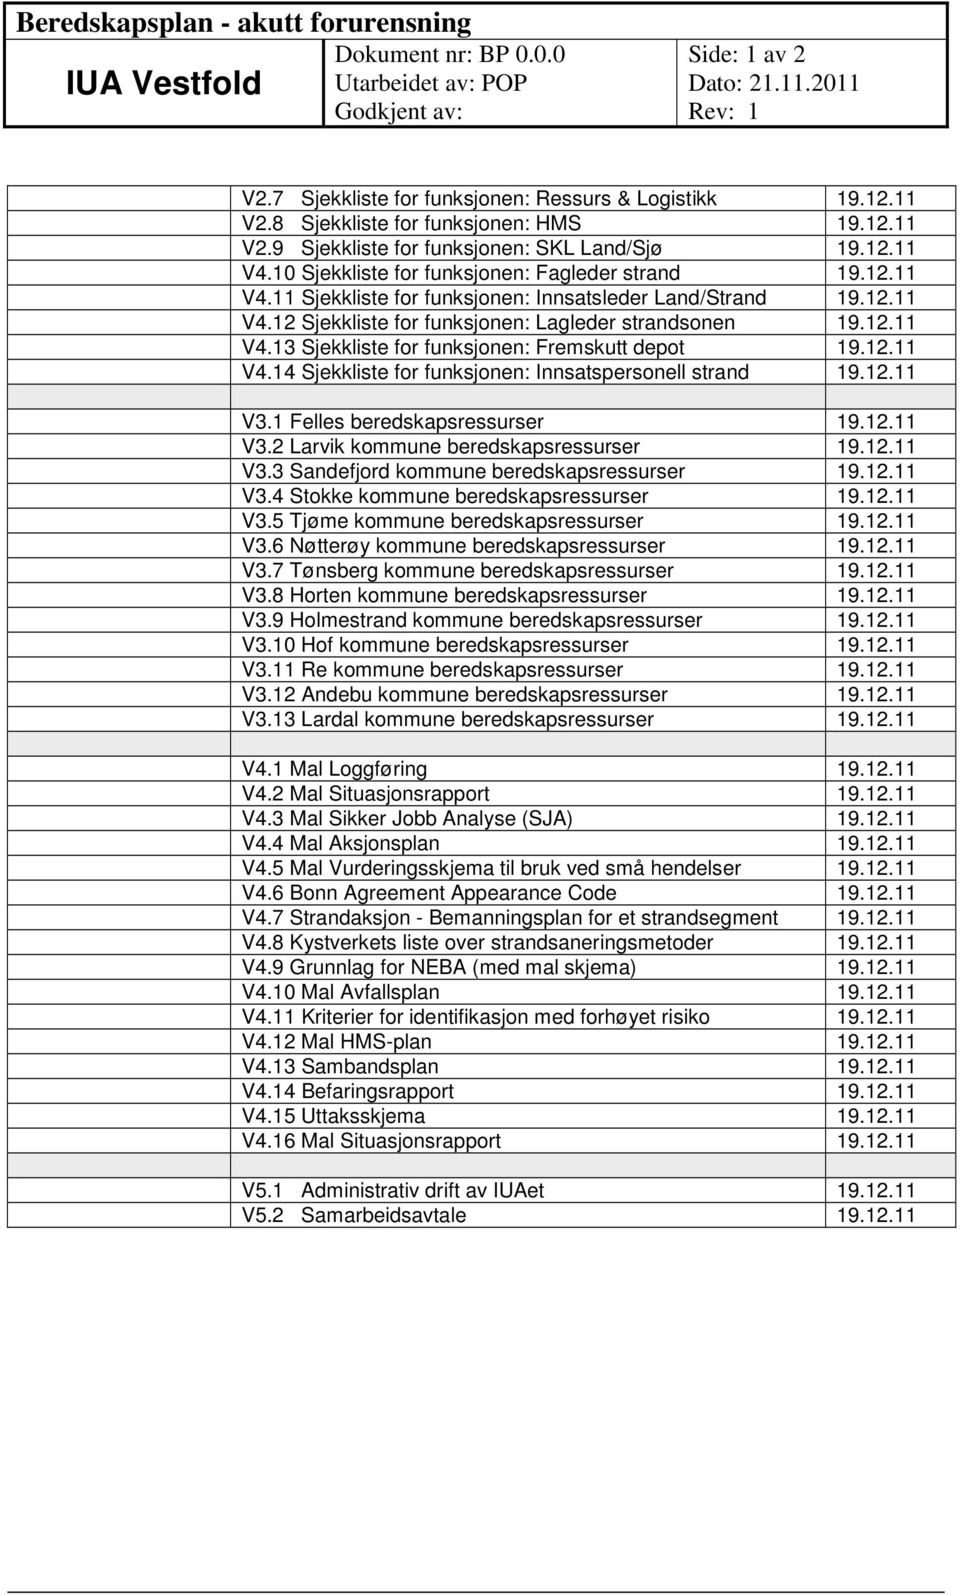 12.11 V4.14 Sjekkliste for funksjonen: Innsatspersonell strand 19.12.11 V3.1 Felles beredskapsressurser 19.12.11 V3.2 Larvik kommune beredskapsressurser 19.12.11 V3.3 Sandefjord kommune beredskapsressurser 19.